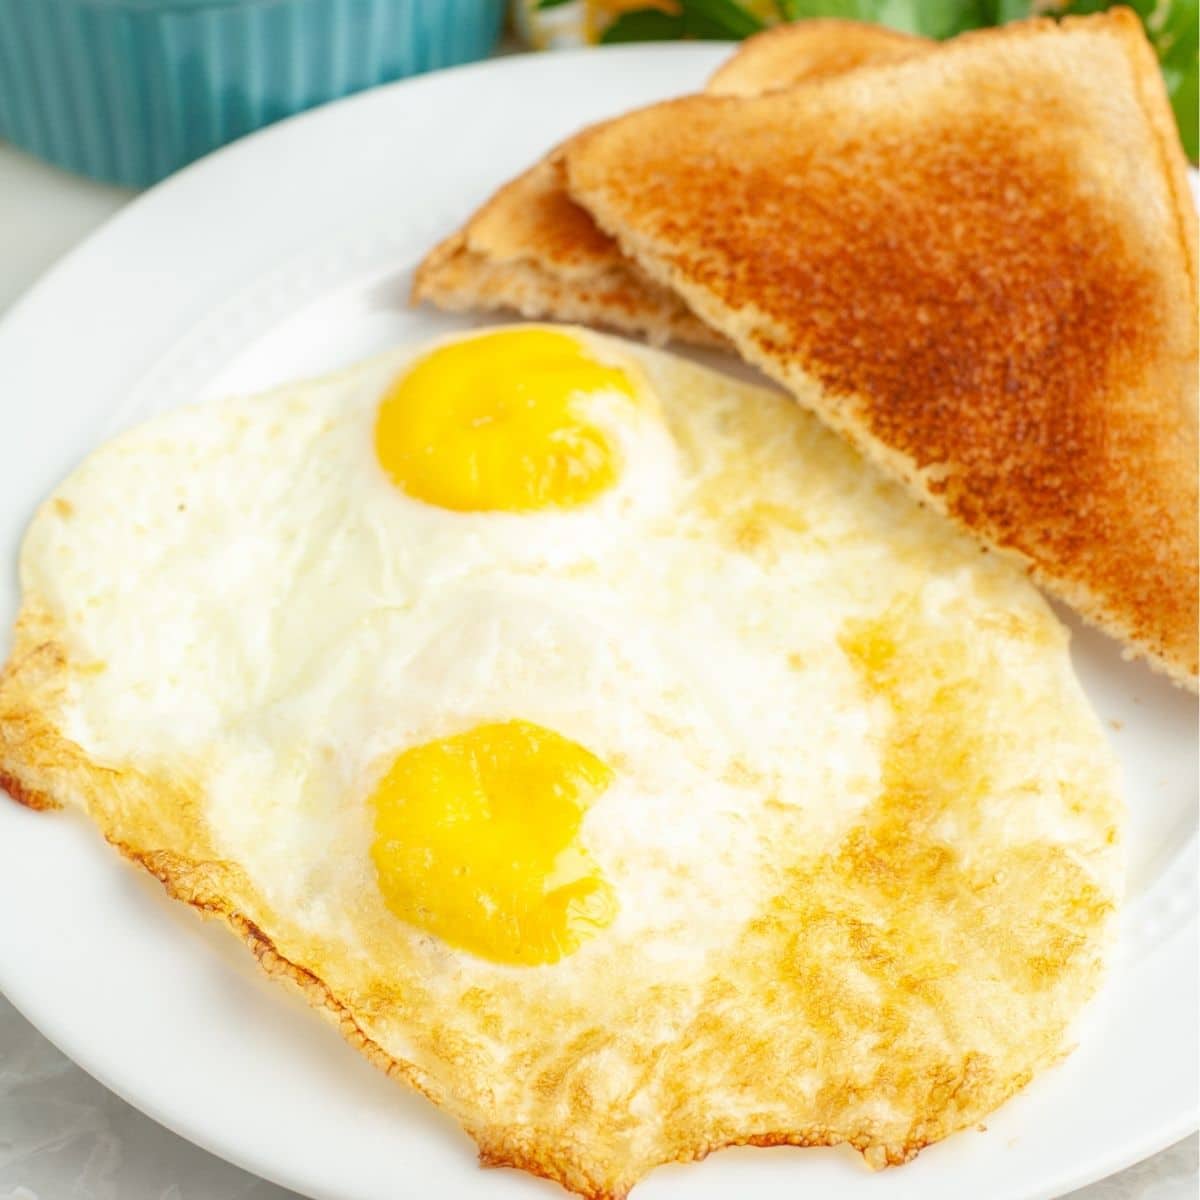 https://www.foodlovinfamily.com/wp-content/uploads/2021/07/fried-egg-in-air-fryer.jpg